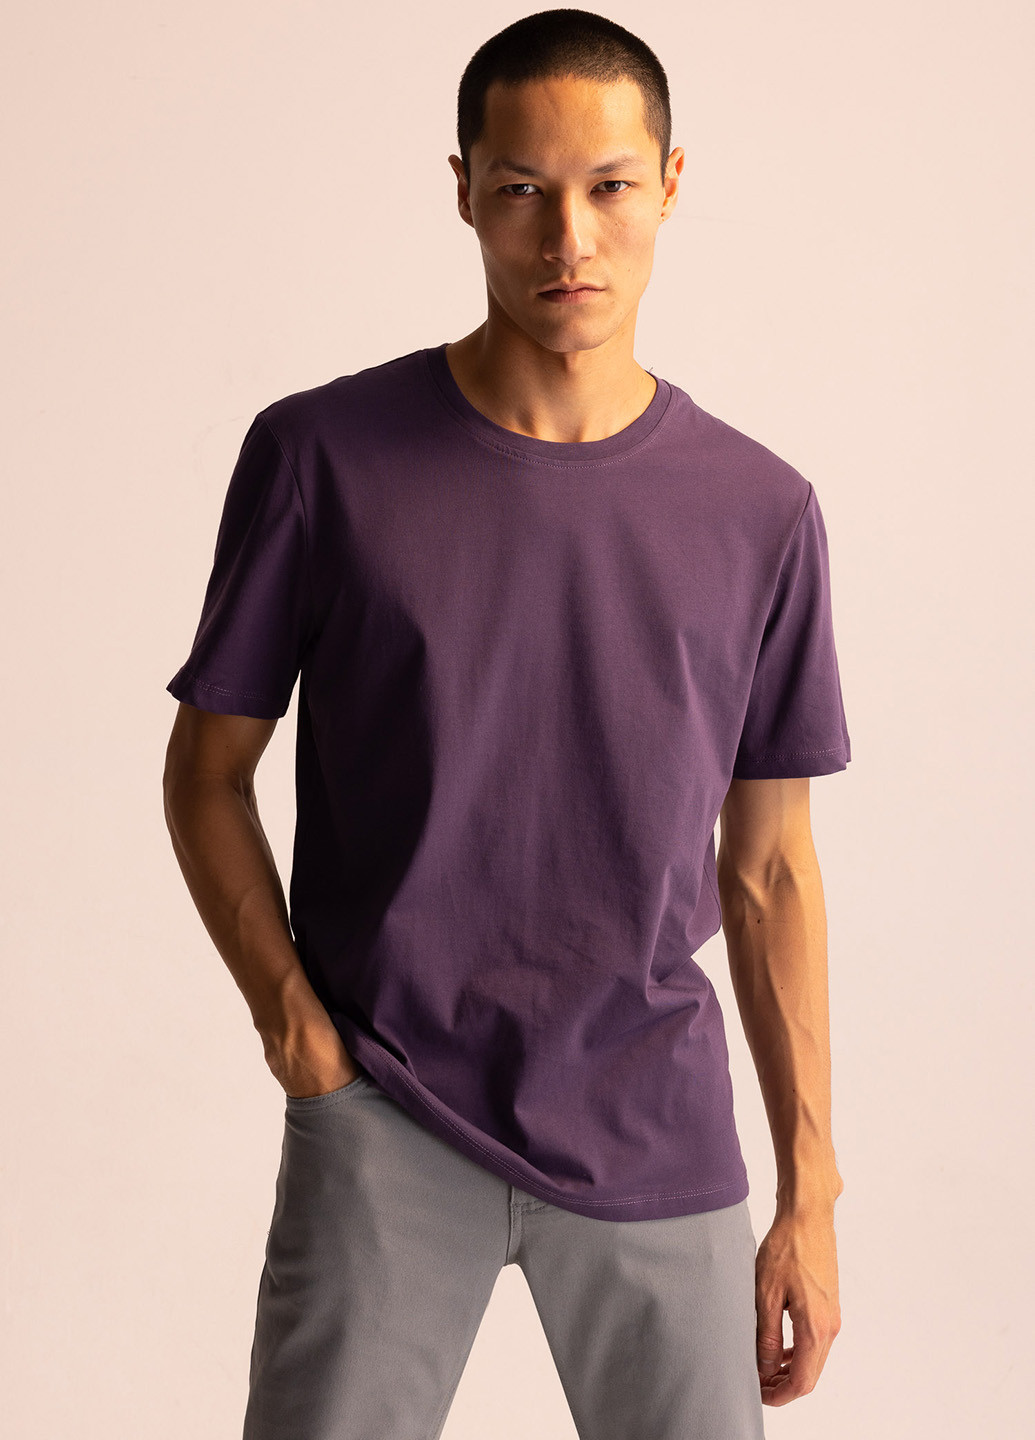 Фиолетовая футболка DeFacto